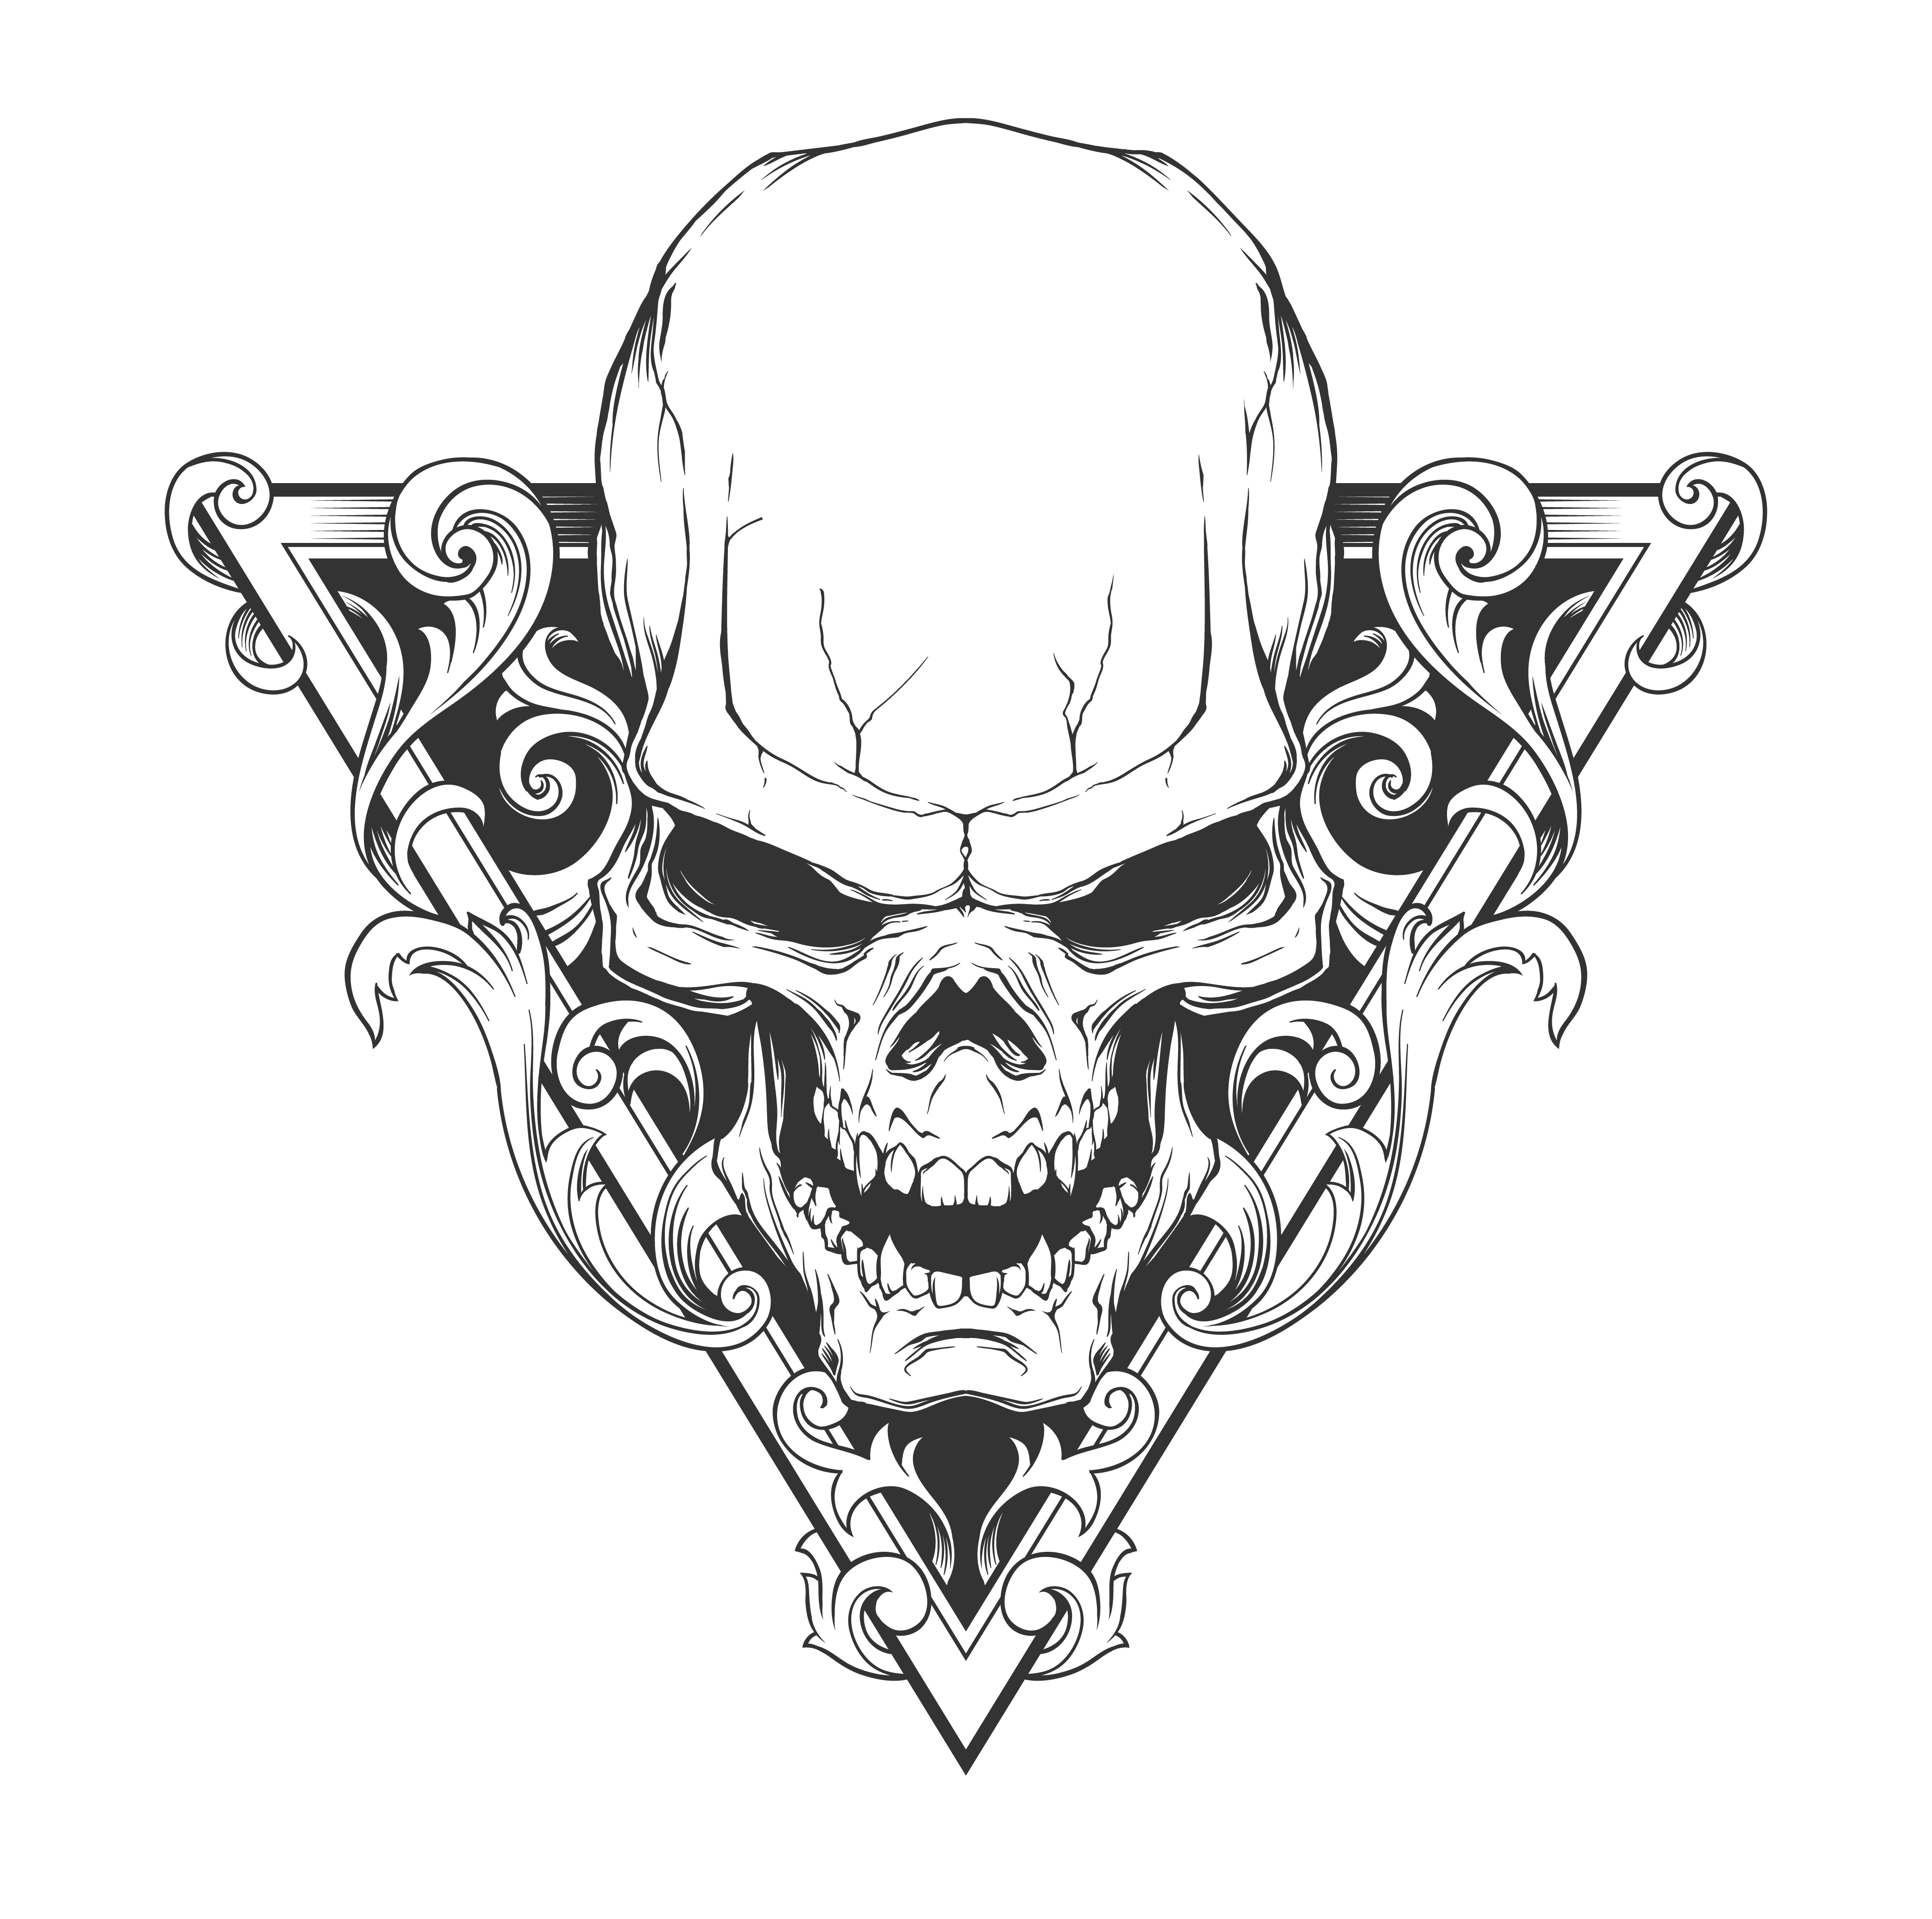 Skull_tattoo